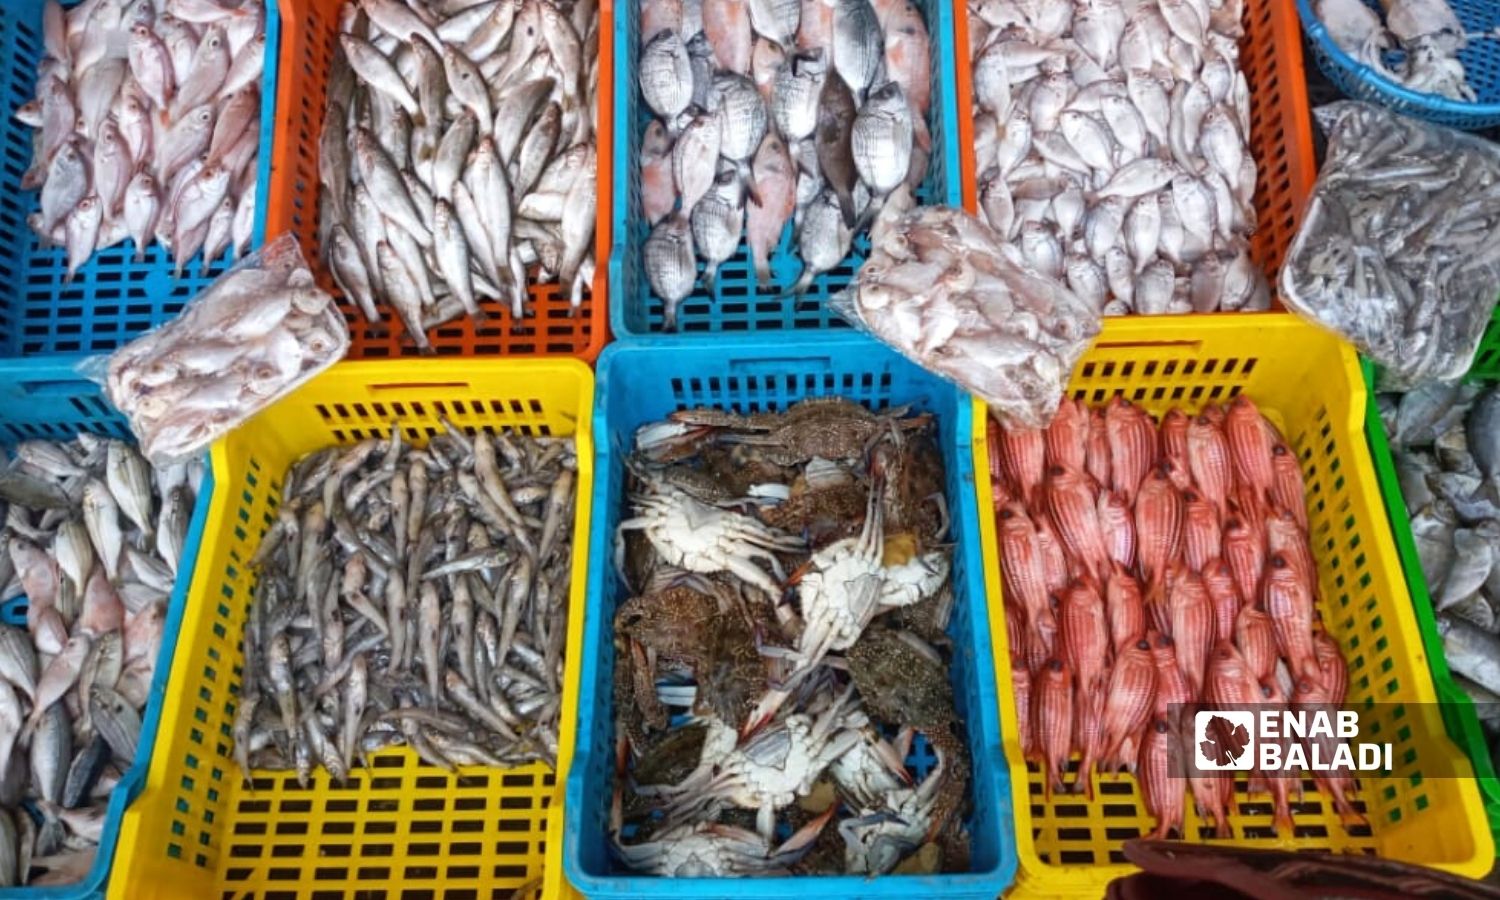 صناديق أسماك في سوق "أوغاريت" بين حيي العوينة وصليبة في مدينة اللاذقية - 2 من نيسان 2022 (عنب بلدي)